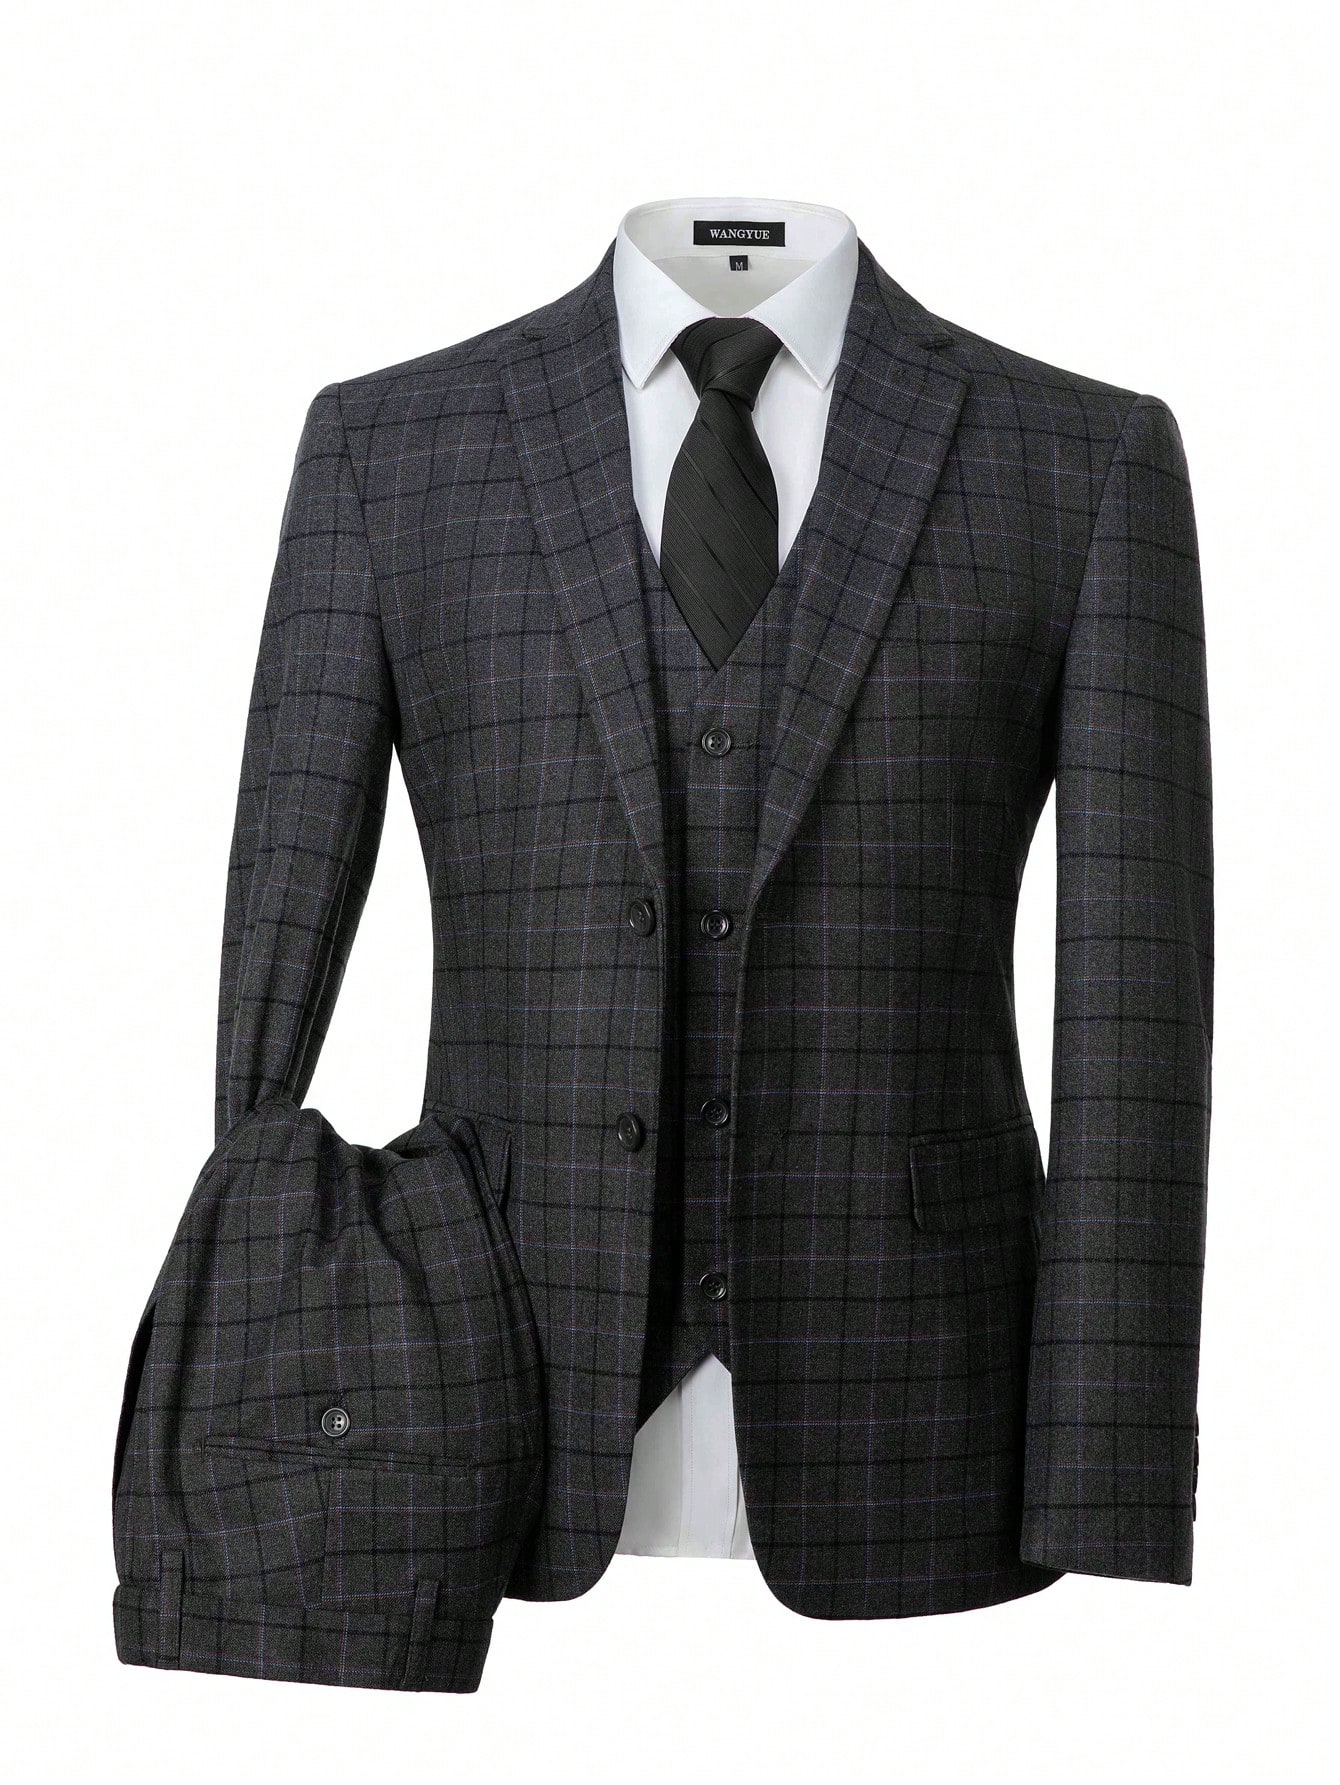 мужской костюм в полоску классический деловой пиджак жилет и брюки комплект из трех предметов мужские элегантные деловые костюмы для сва Мужской костюм-тройка в клетку: жилет и брюки, темно-серый